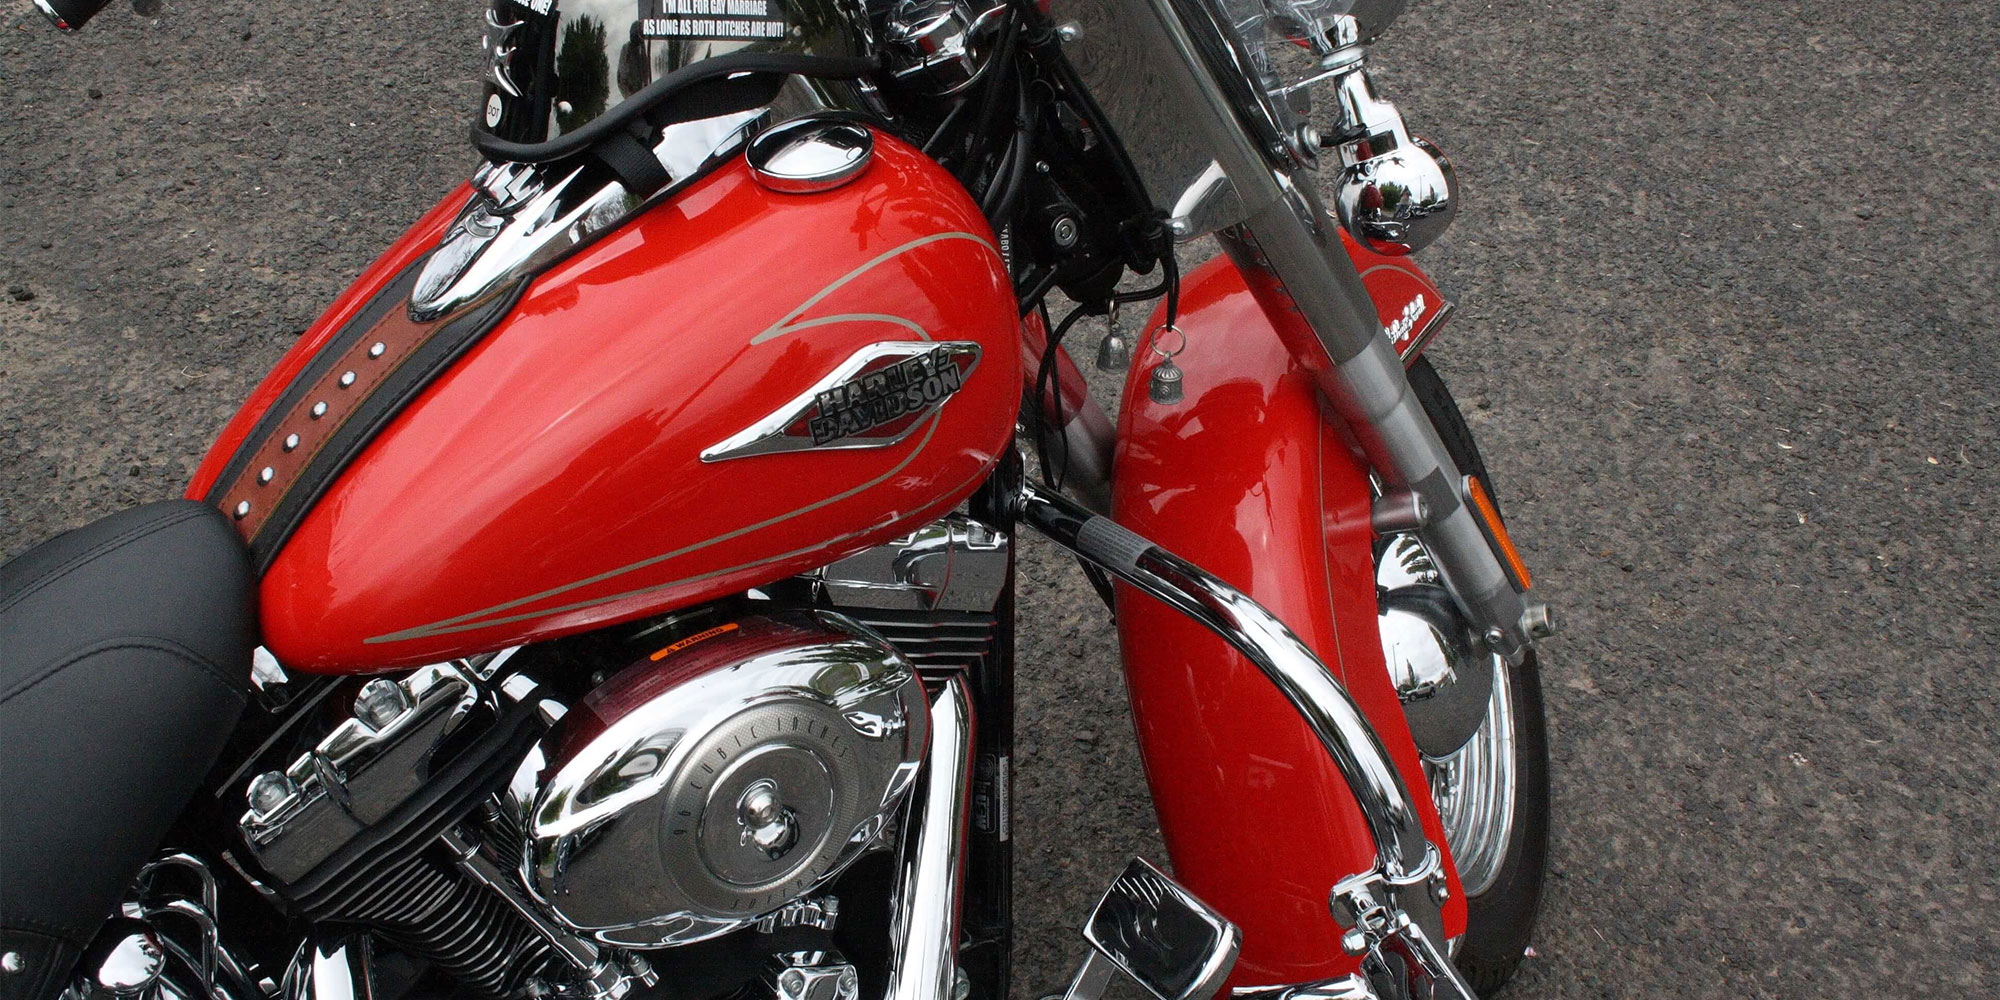 En ren och glänsande motorcykel som visar sin lysande röda tank och fender